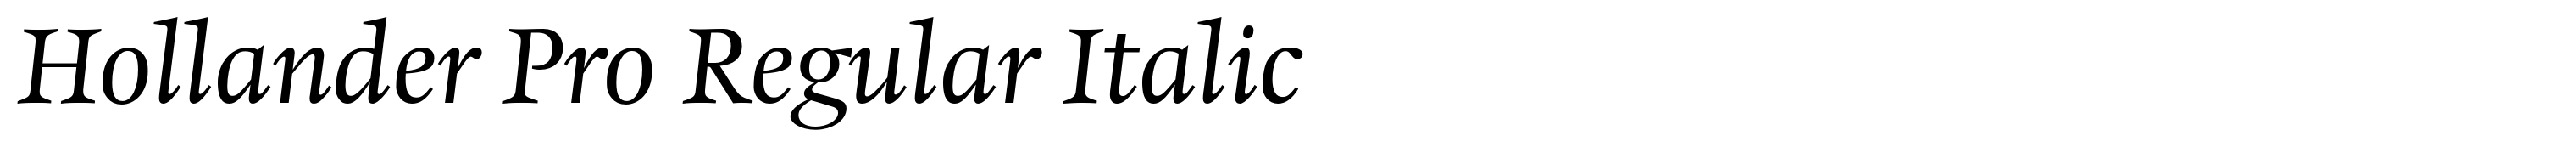 Hollander Pro Regular Italic